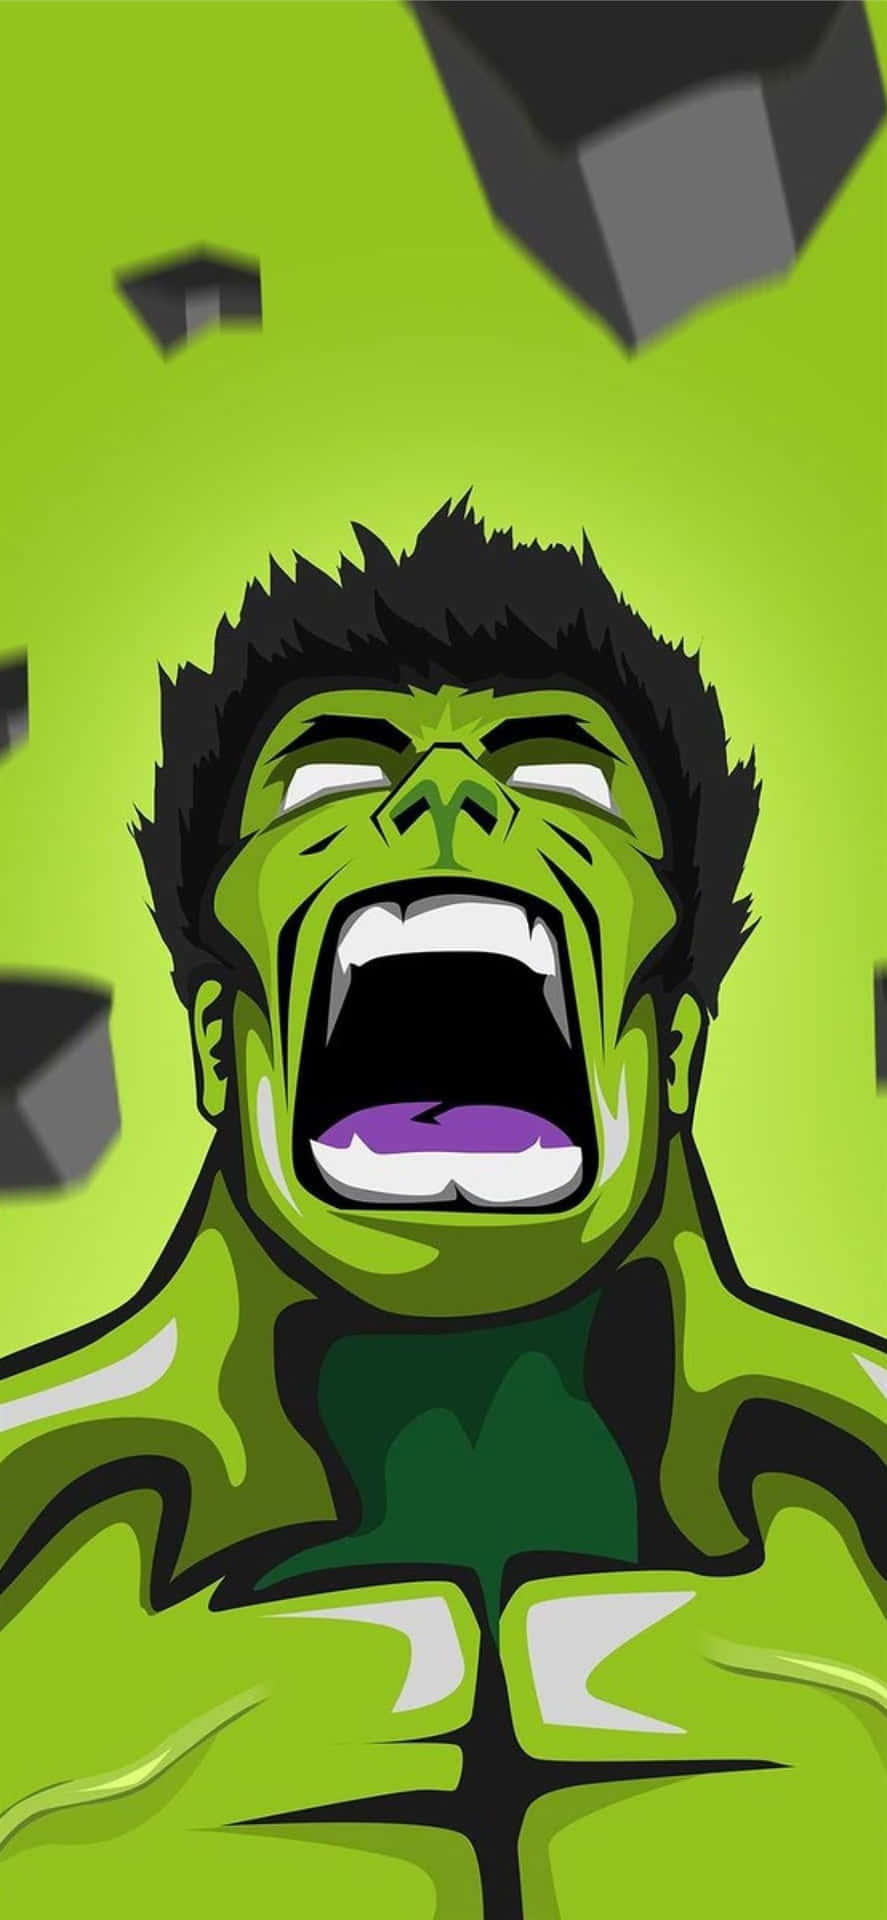 Oincrível Hulk Desencadeando Sua Incrível Fúria.